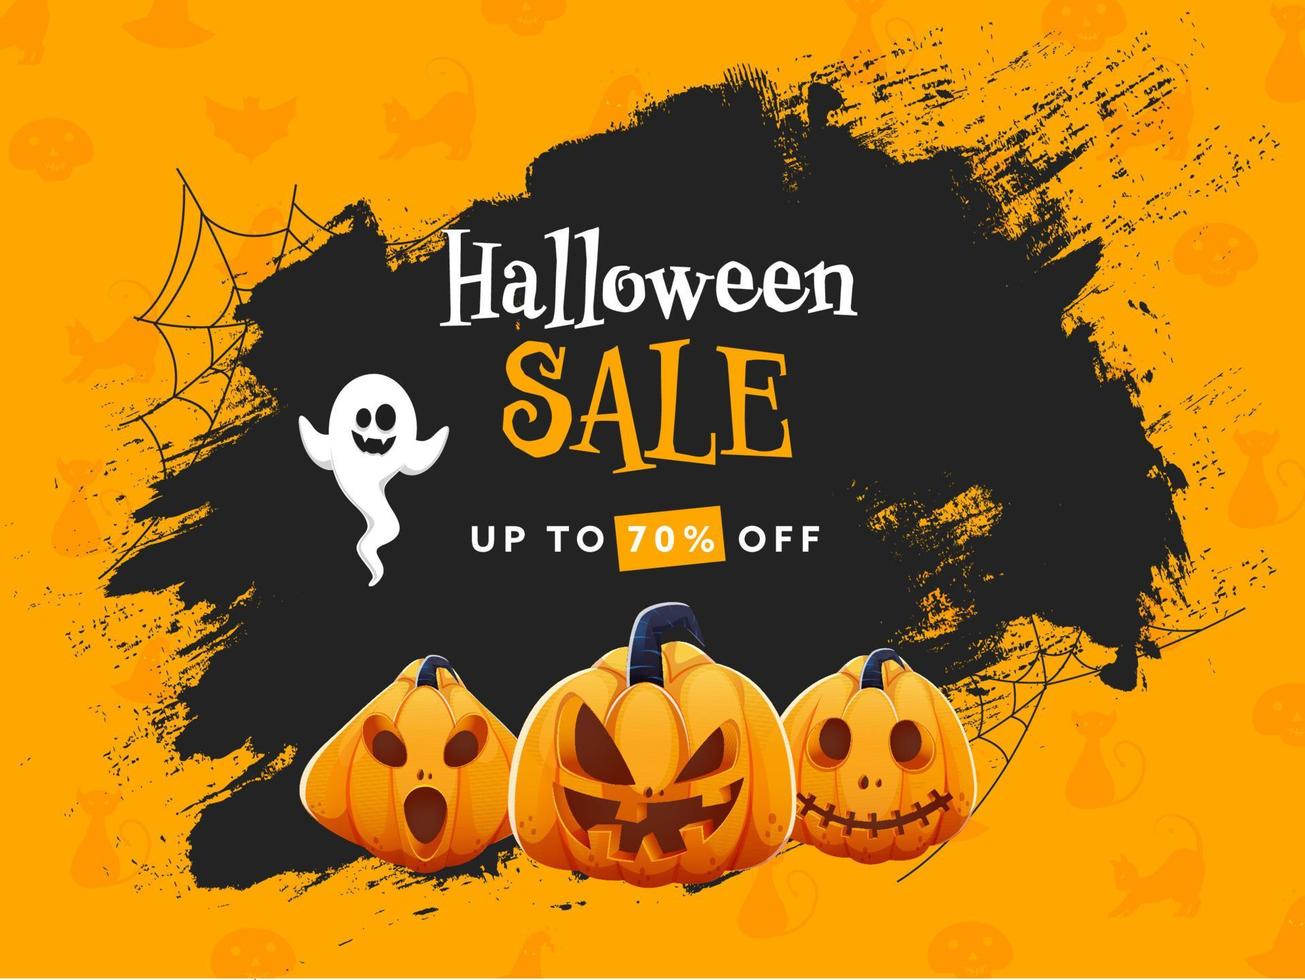 Halloween Verkauf Poster Design mit Rabatt Angebot, Kürbislaternen, Karikatur Geist und schwarz Bürste Grunge auf Orange Hintergrund. vektor